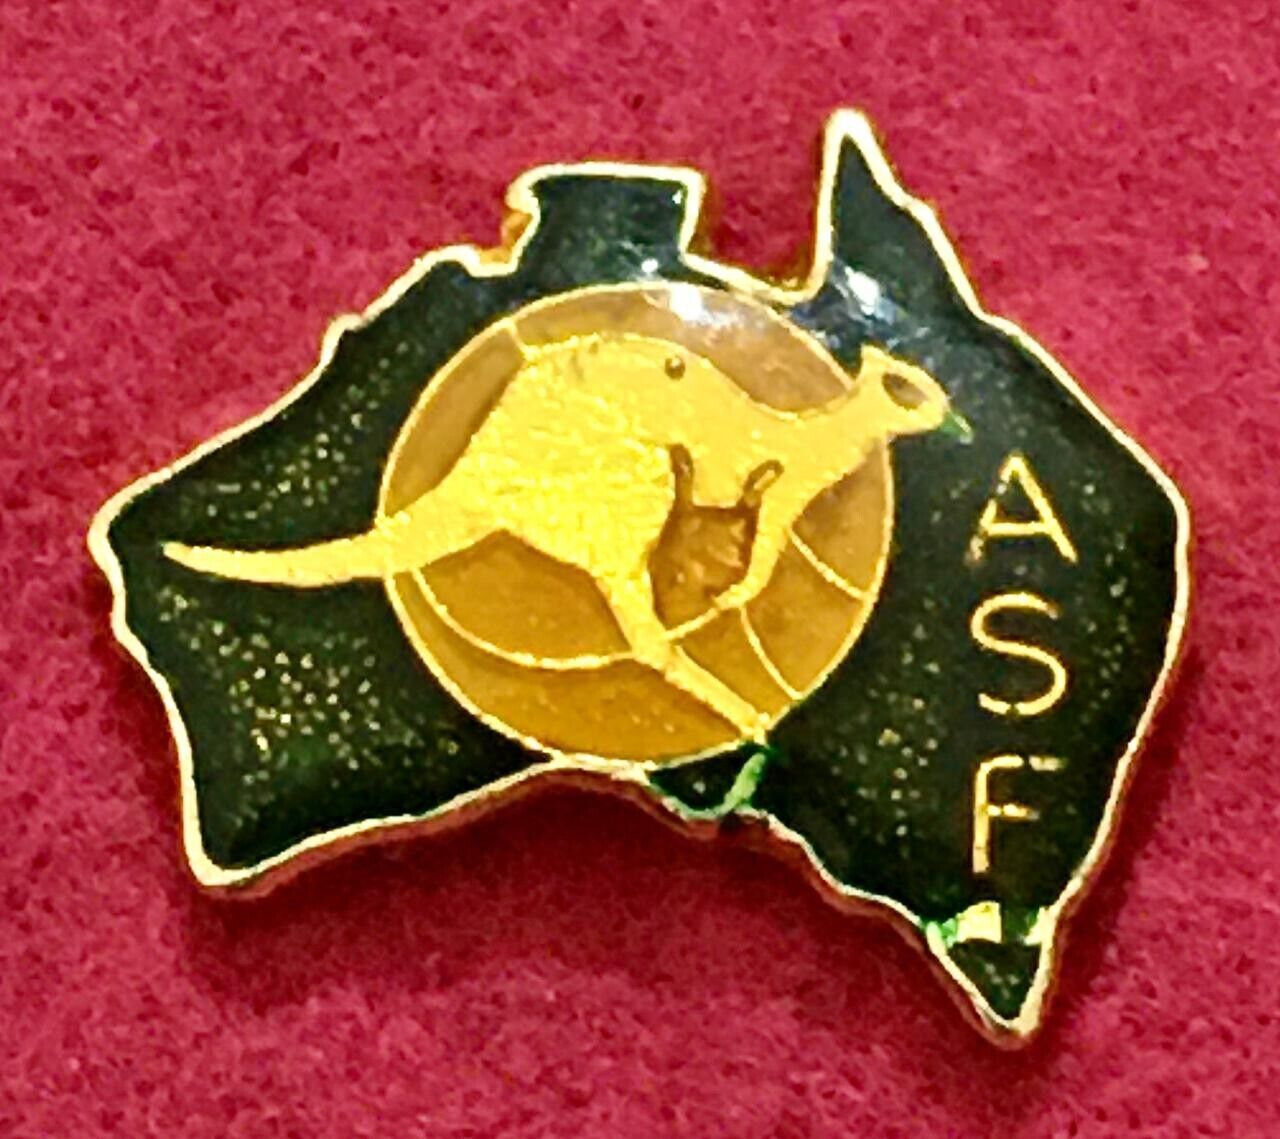 Socceroos Football Australia Vintage Pin Badge